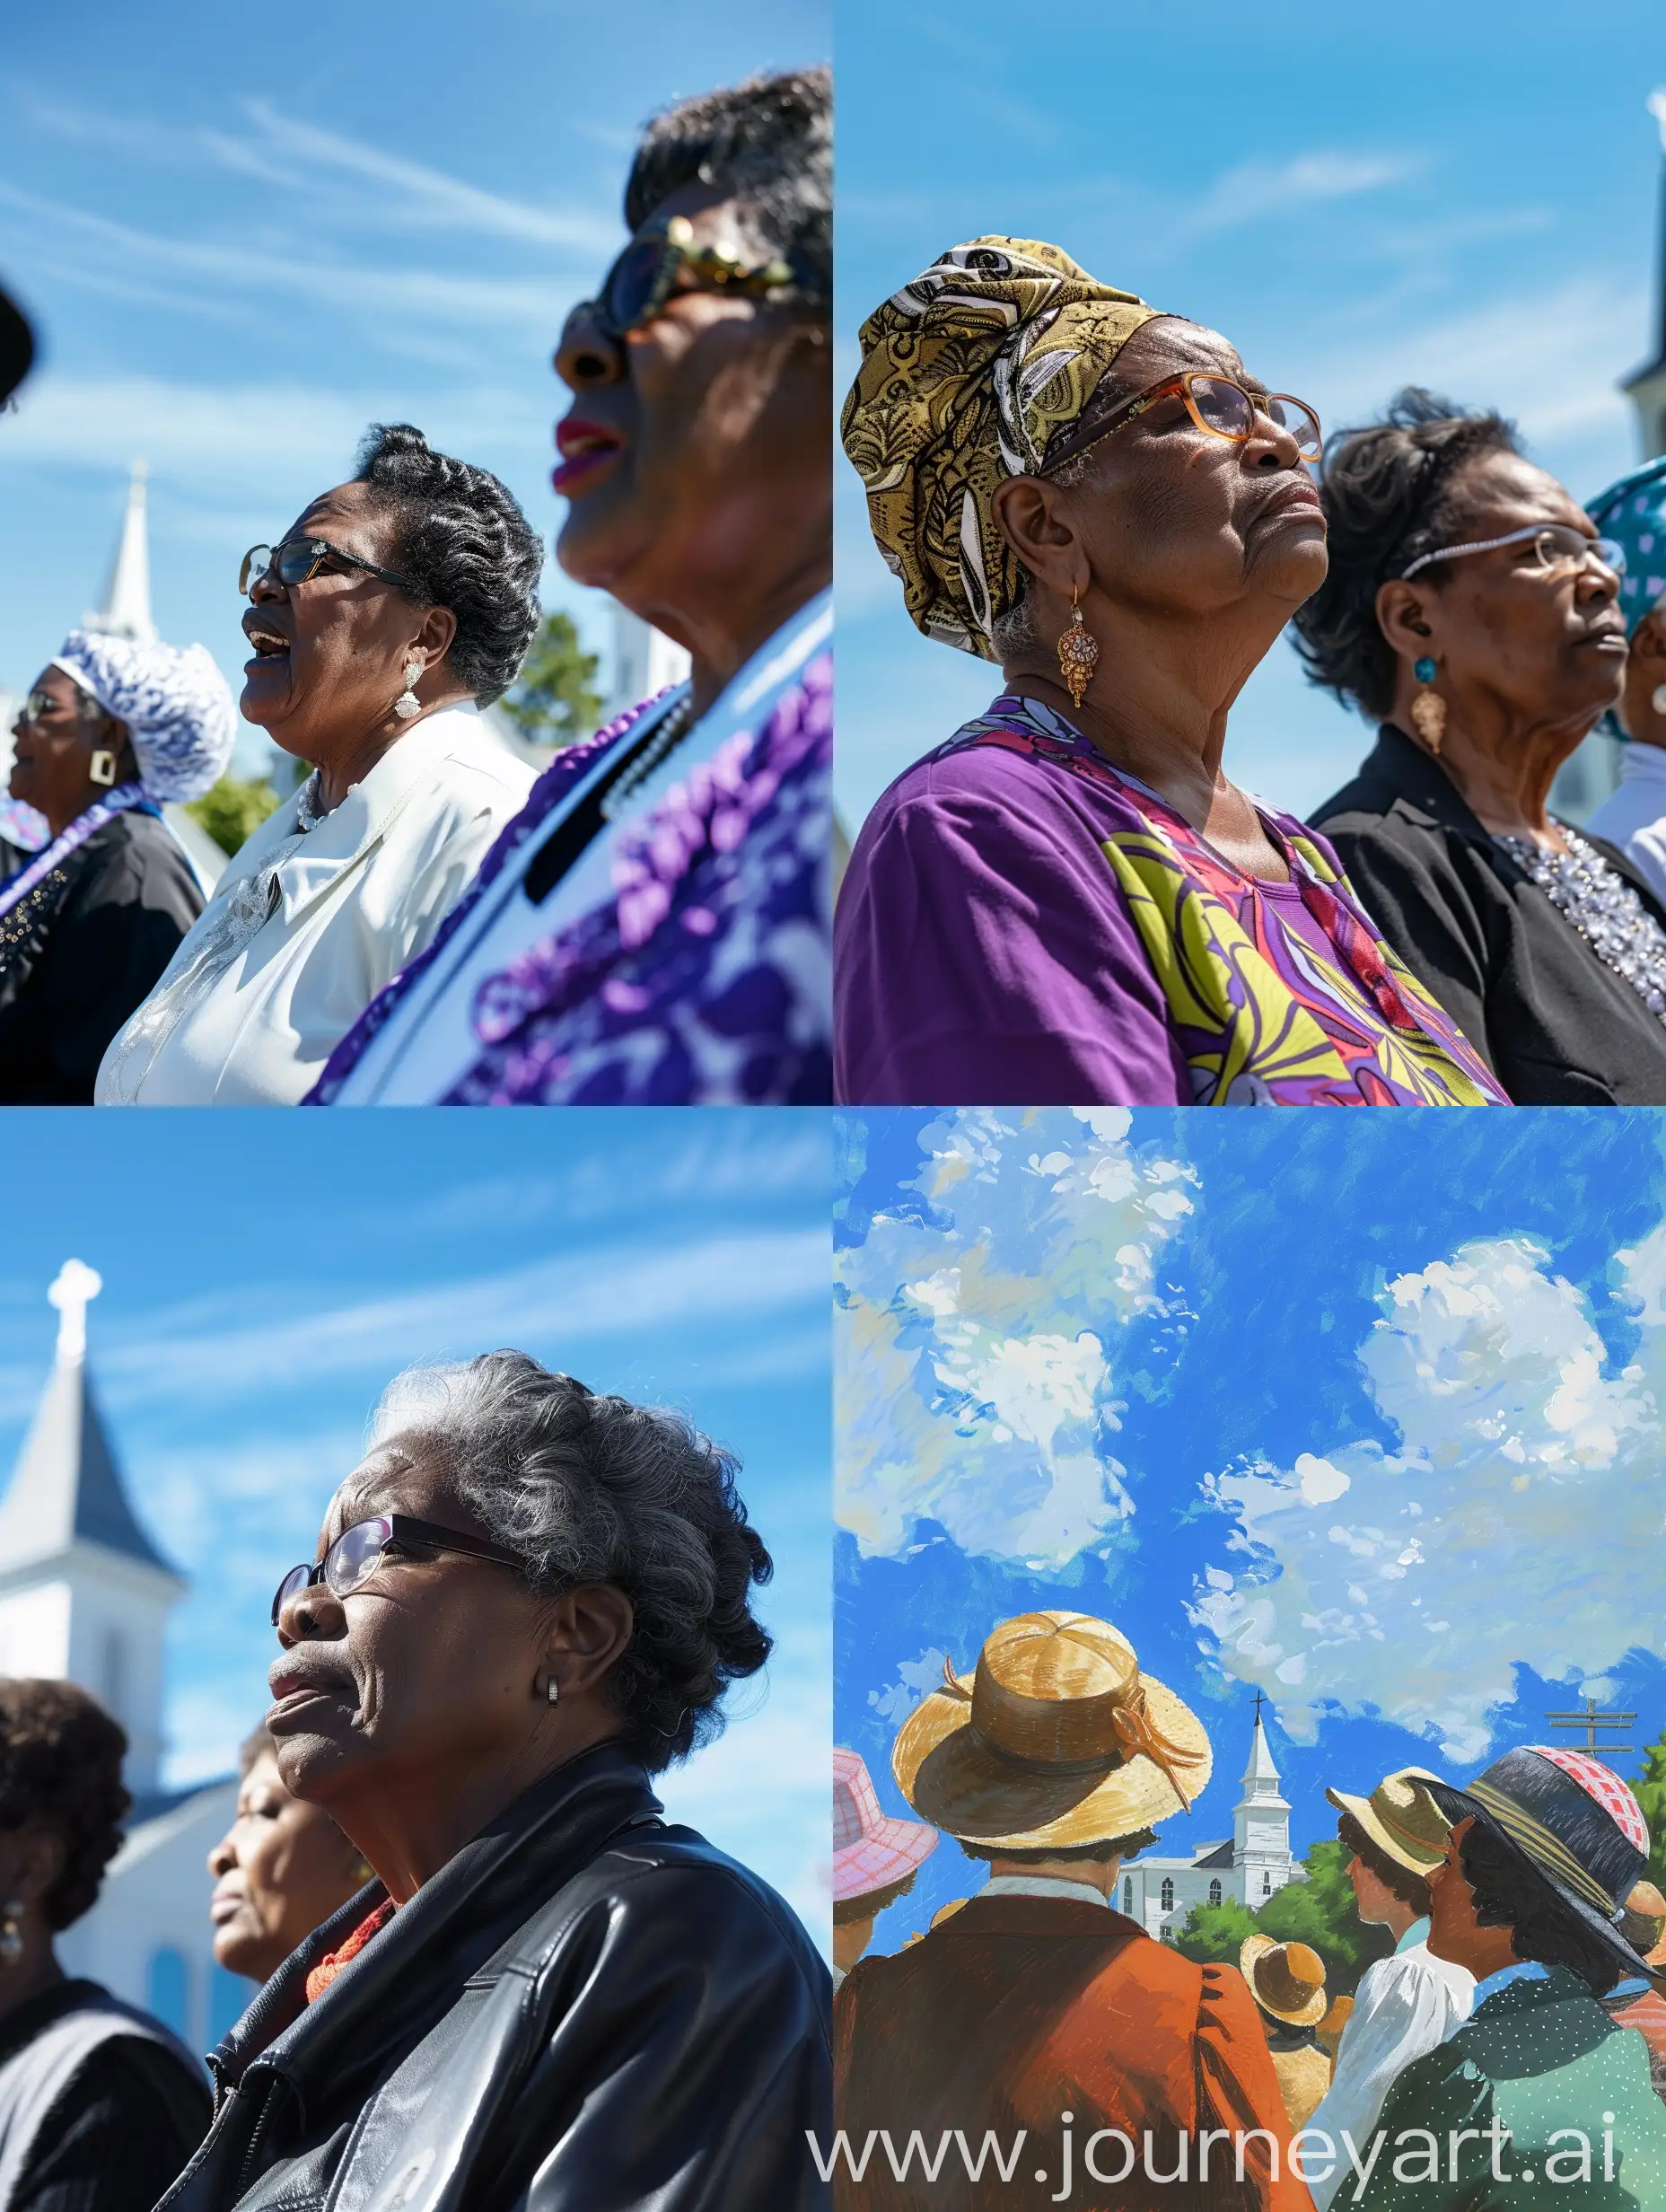 Methodist-Women-Preachers-with-Churches-under-Blue-Skies